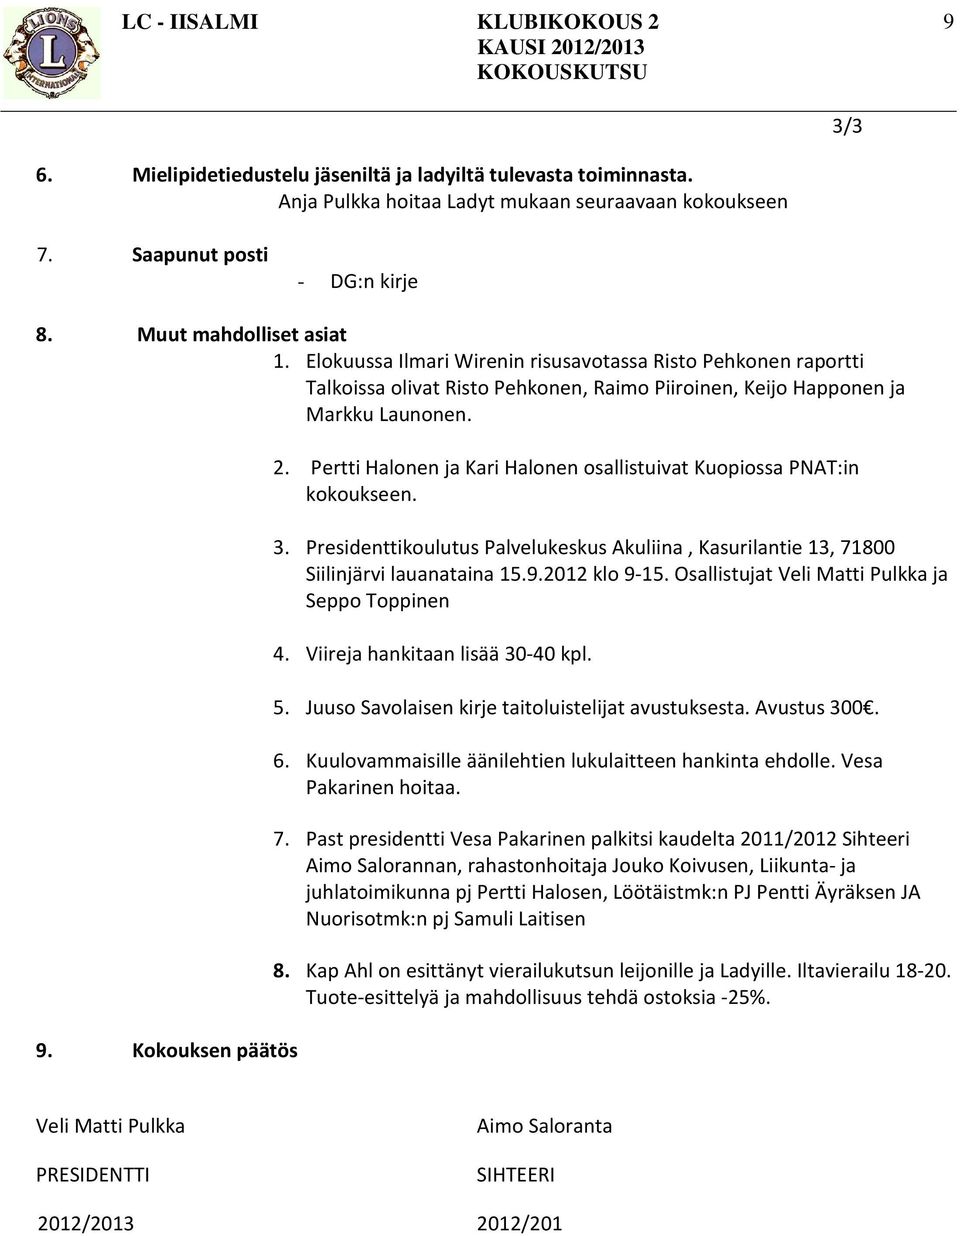 Pertti Halonen ja Kari Halonen osallistuivat Kuopiossa PNAT:in kokoukseen. 3. Presidenttikoulutus Palvelukeskus Akuliina, Kasurilantie 13, 71800 Siilinjärvi lauanataina 15.9.2012 klo 9-15.